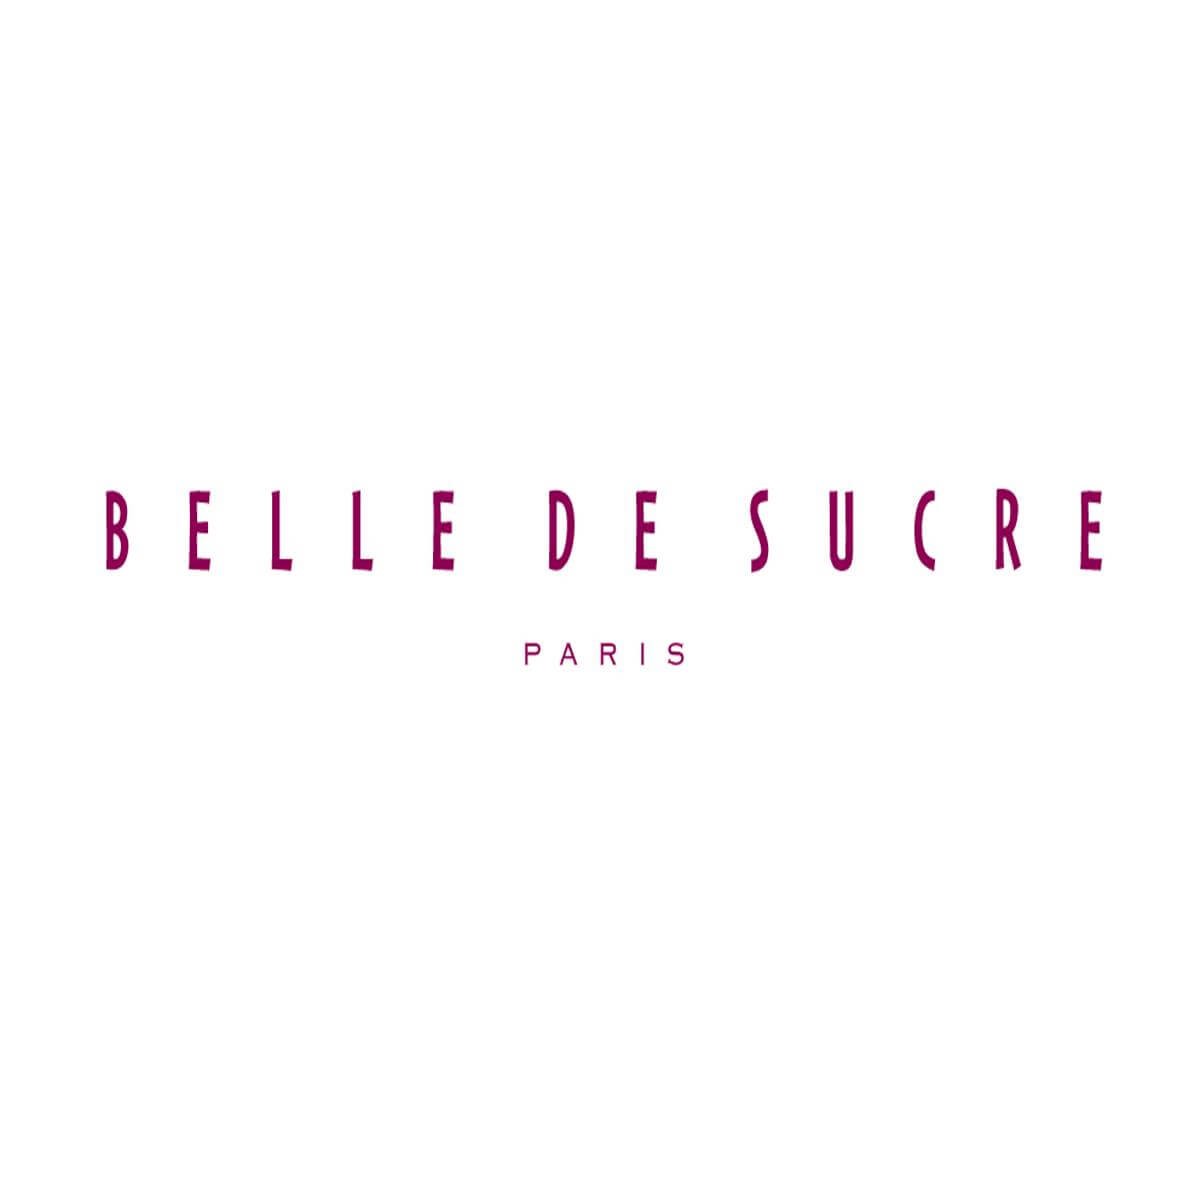 Belle de Sucre